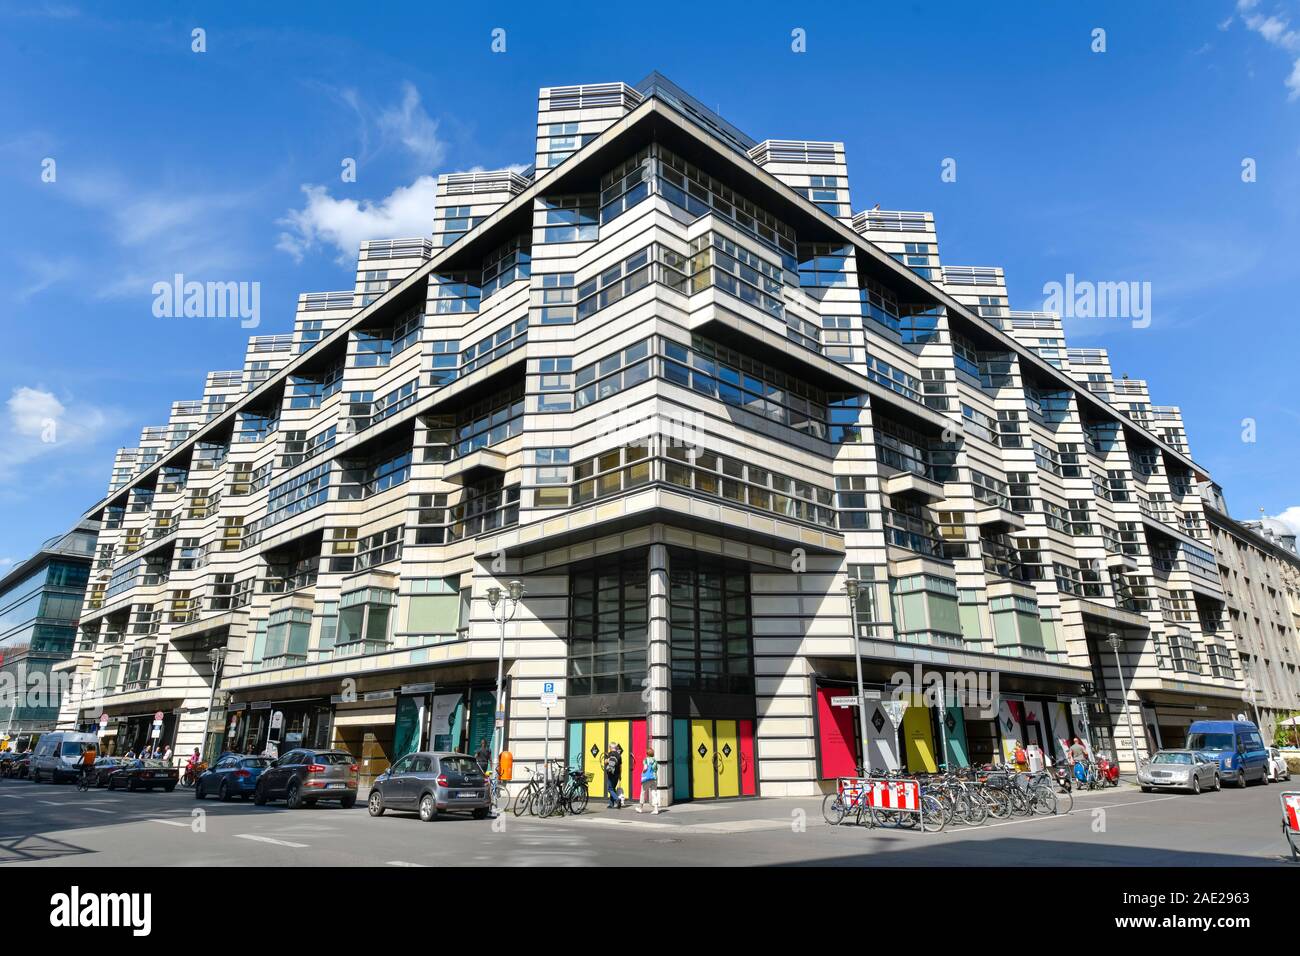 Geschäftshaus Quartier 206, Friedrichstraße, Mitte, Berlin, Deutschland Stock Photo